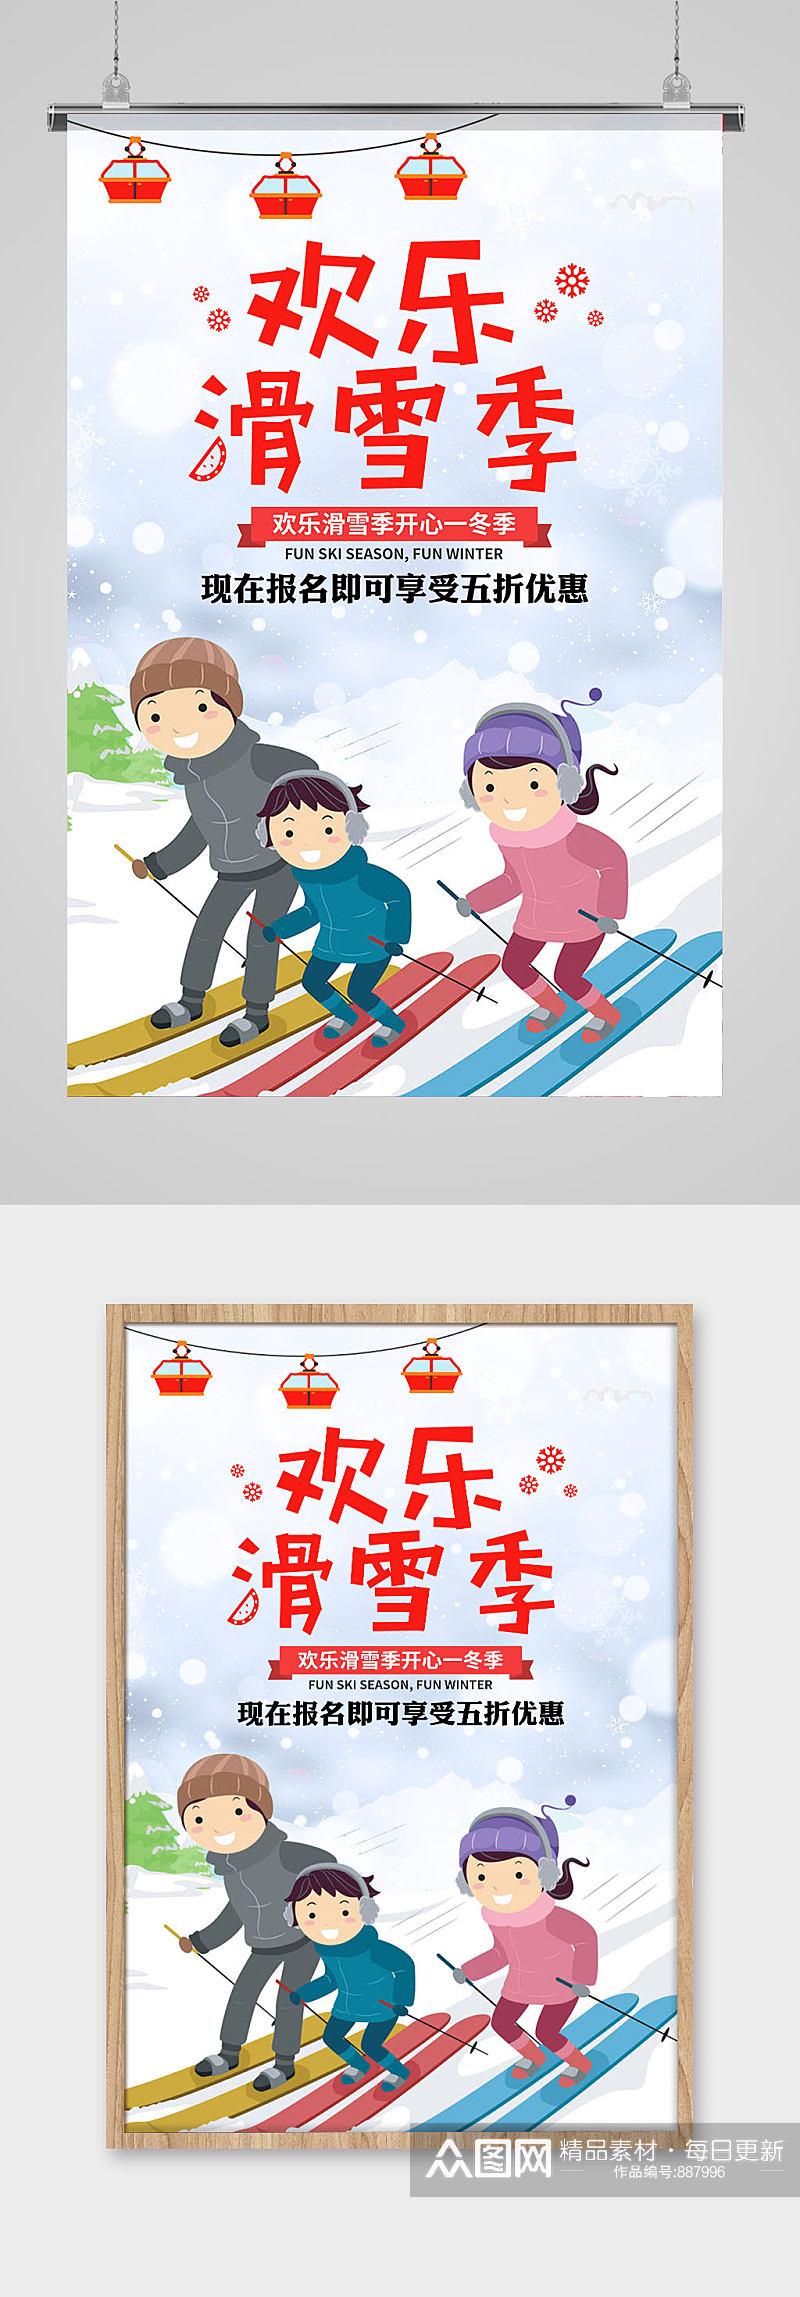 欢乐滑雪季展板海报素材